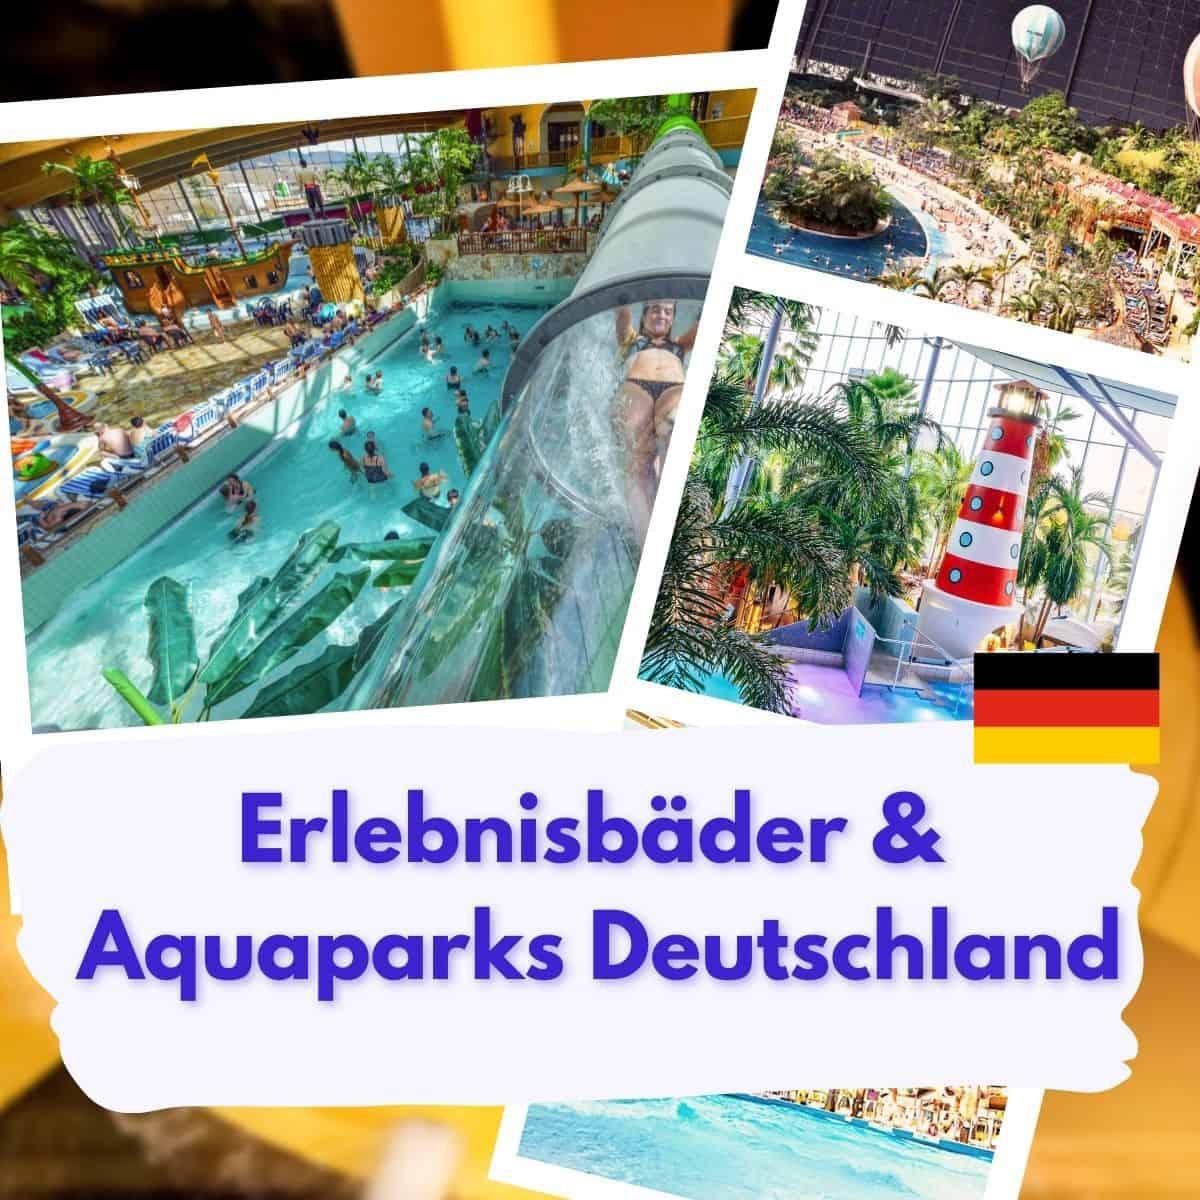 Die besten Erlebnisbäder, Thermen, Spaßbäder, Rutschen- und Aquaparks in Deutschland, Europa und der Welt.